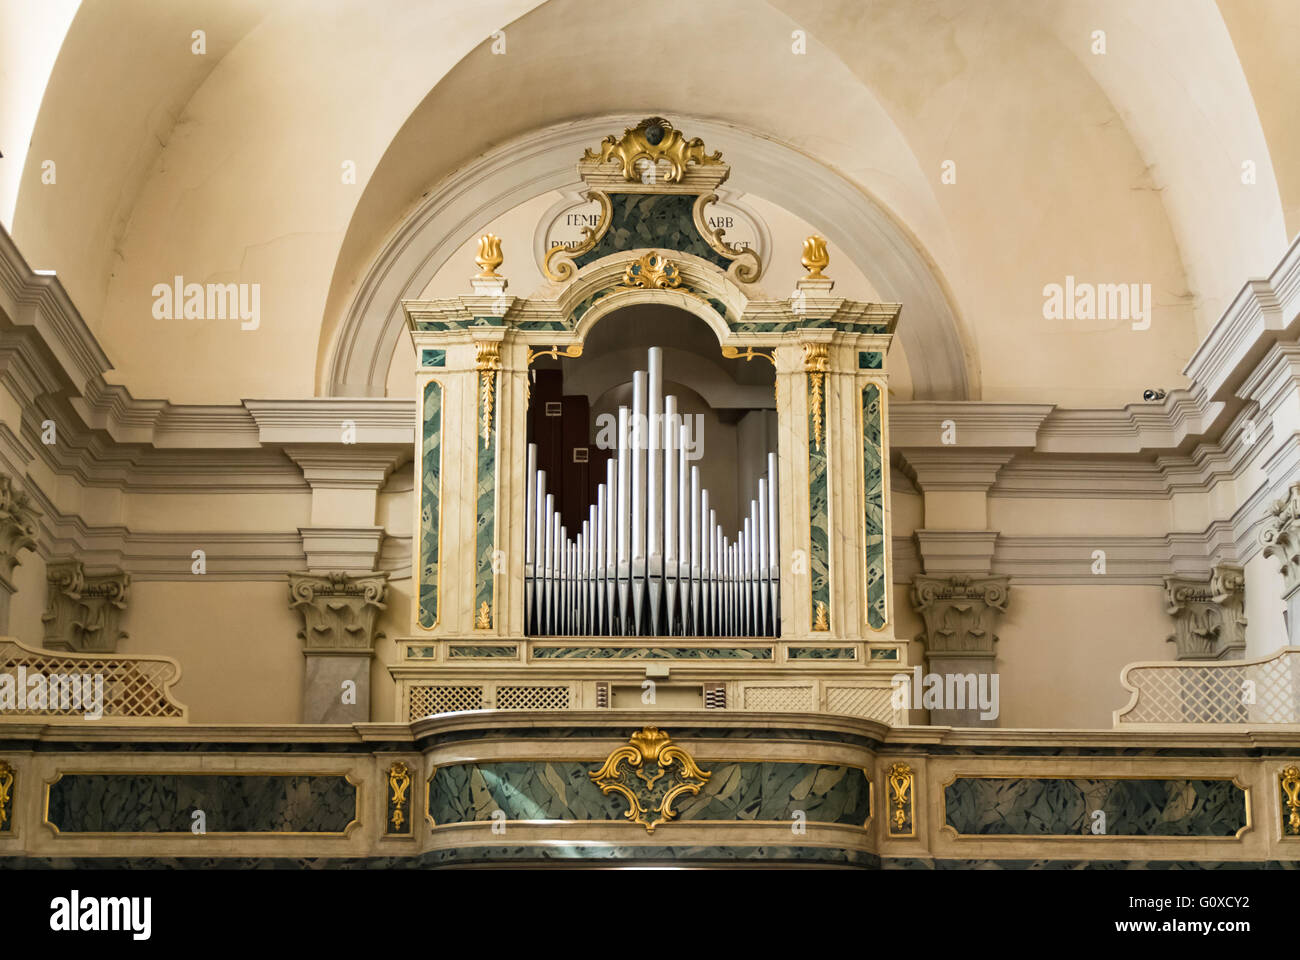 Schiavon, Italie - 12 Avril 2016 : Orgue et chœur au-dessus de l'entrée de l'église de Saint Antoine Abbé. Banque D'Images